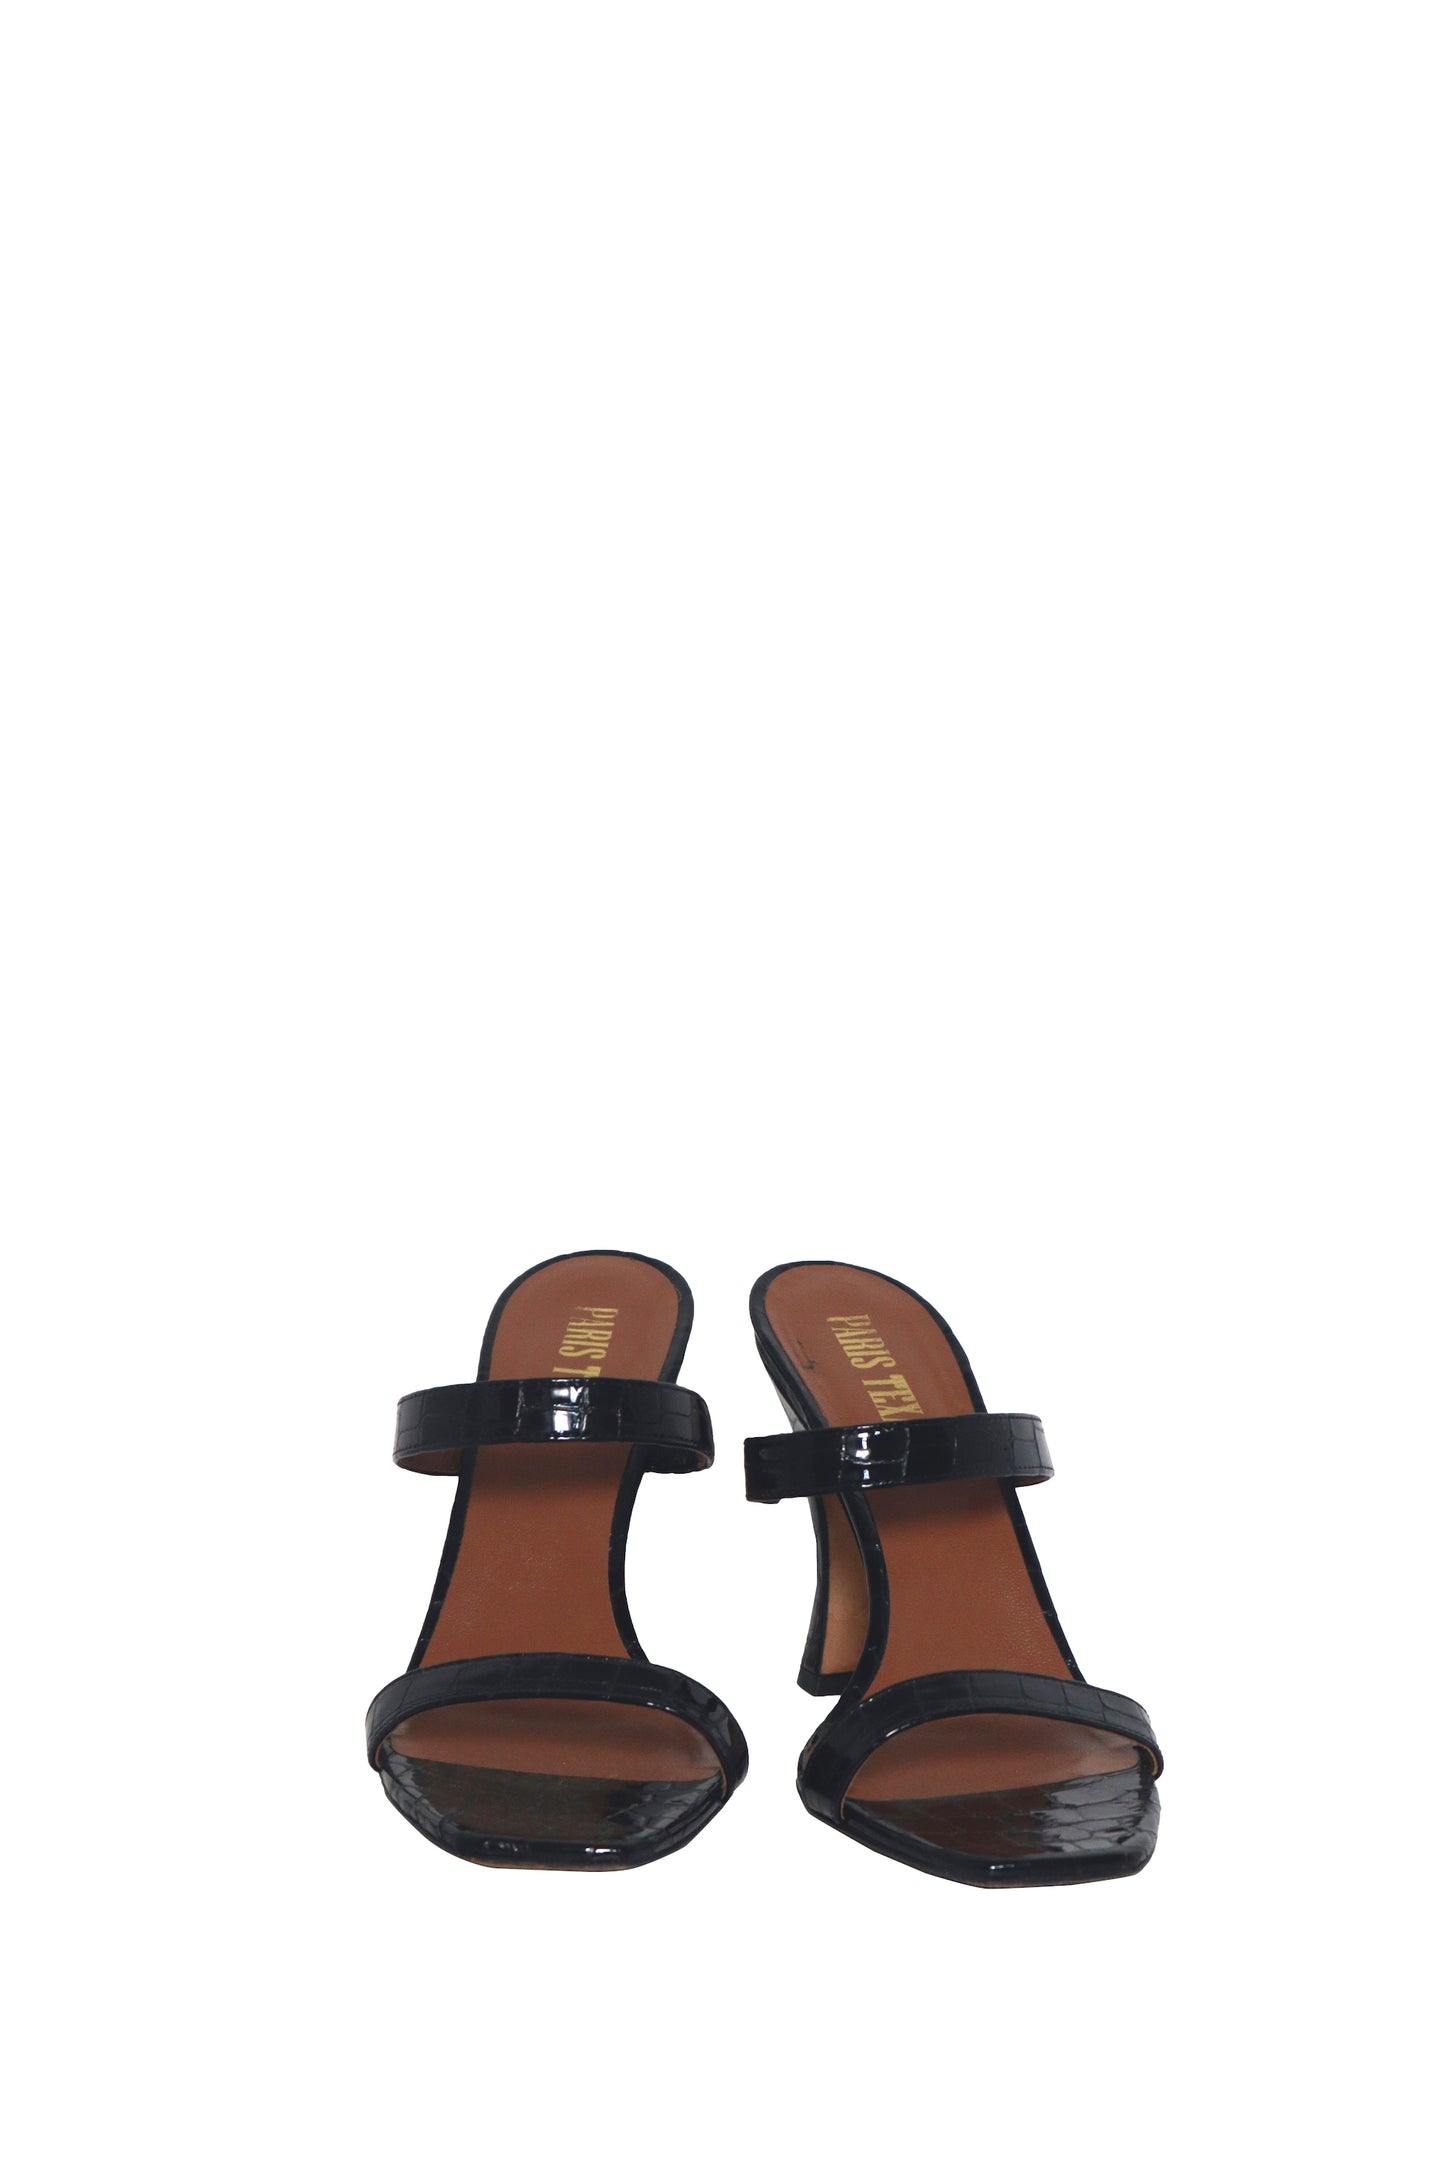 PARIS TEXAS - Black Croc Patent Sandal Heel - Size 39